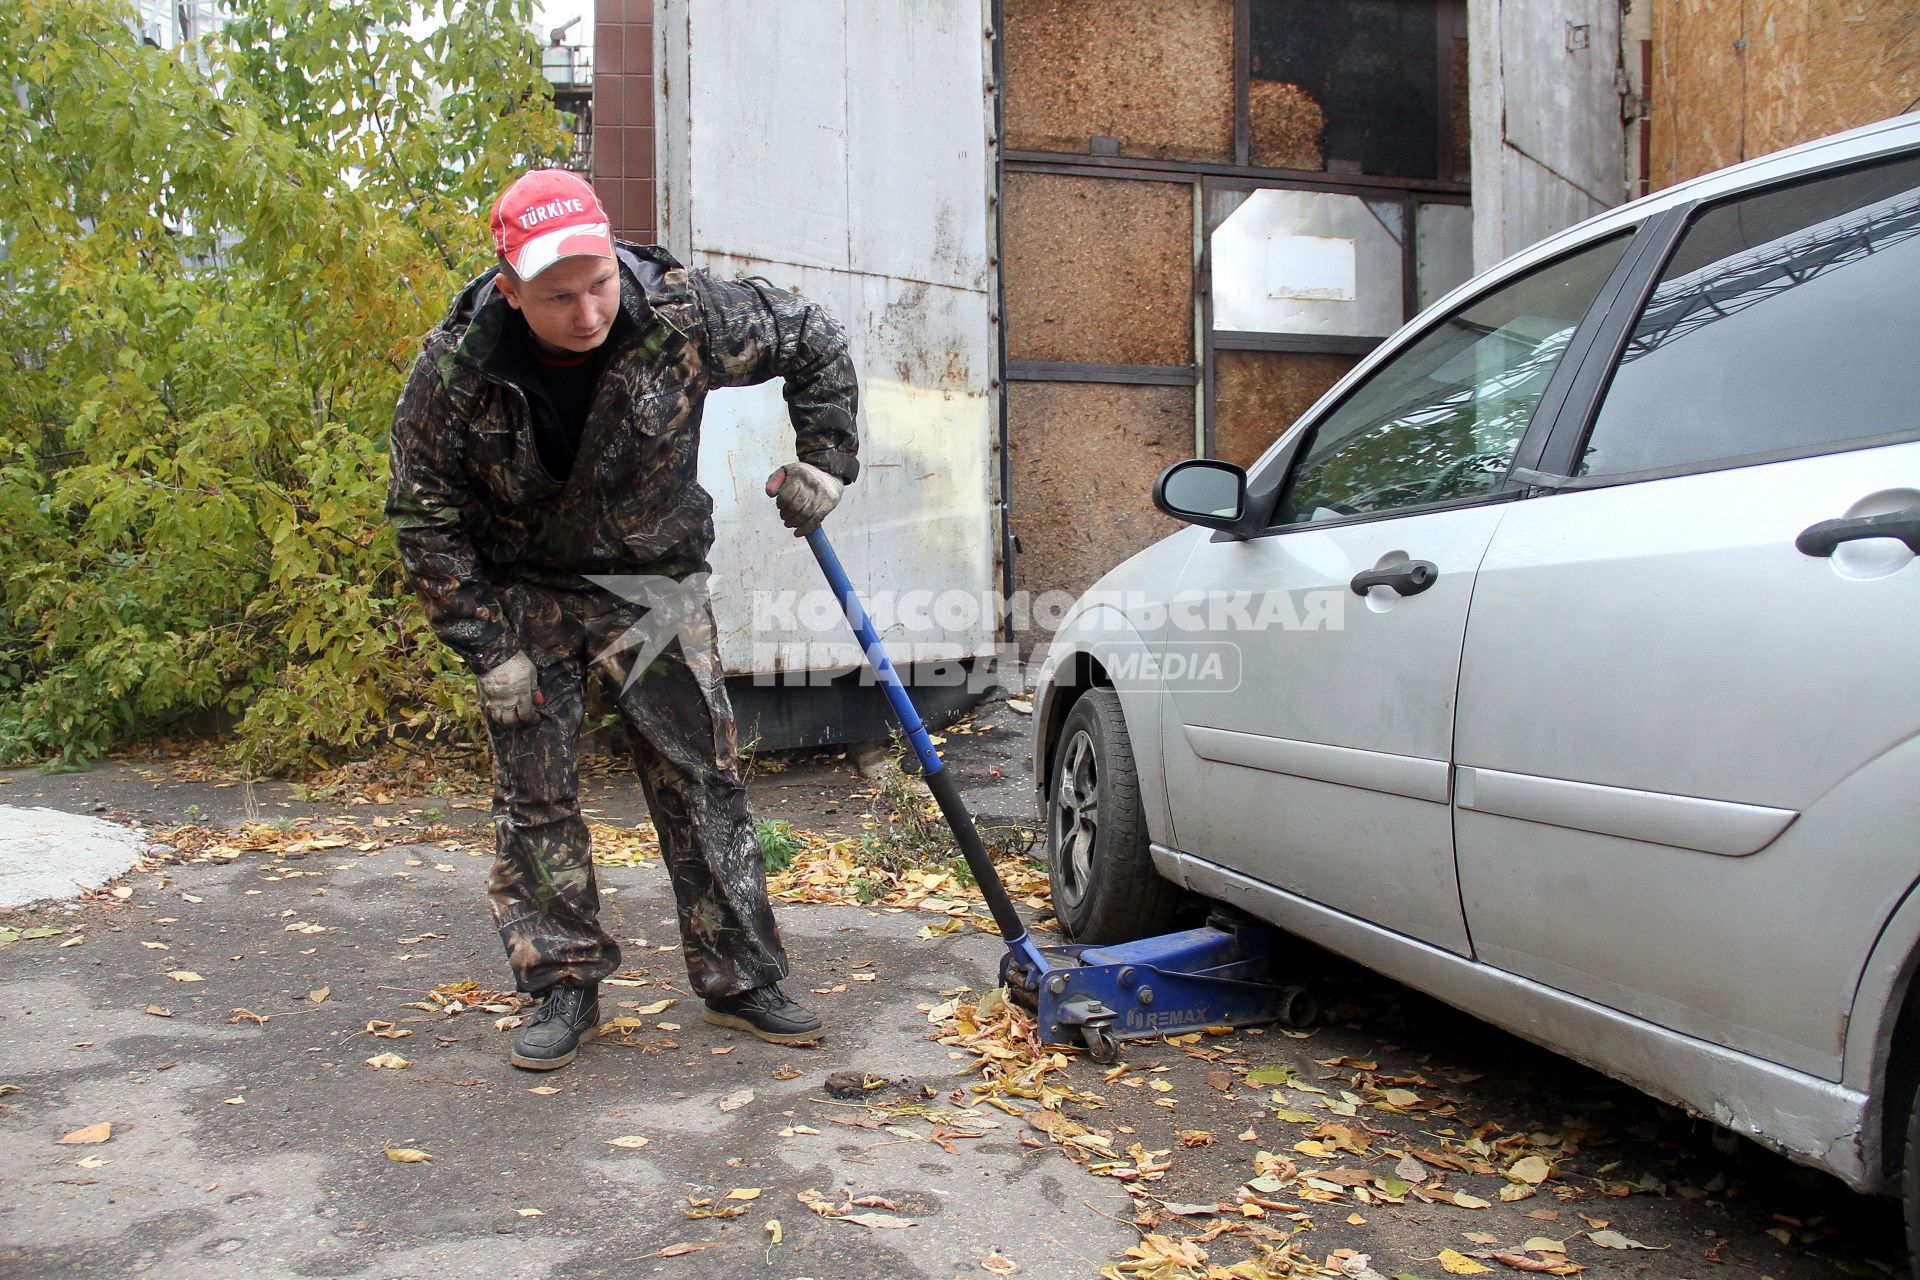 Нижний Новгород.  Работник шиномонтажной мастерской поднимает домкратом машину для замены колес.